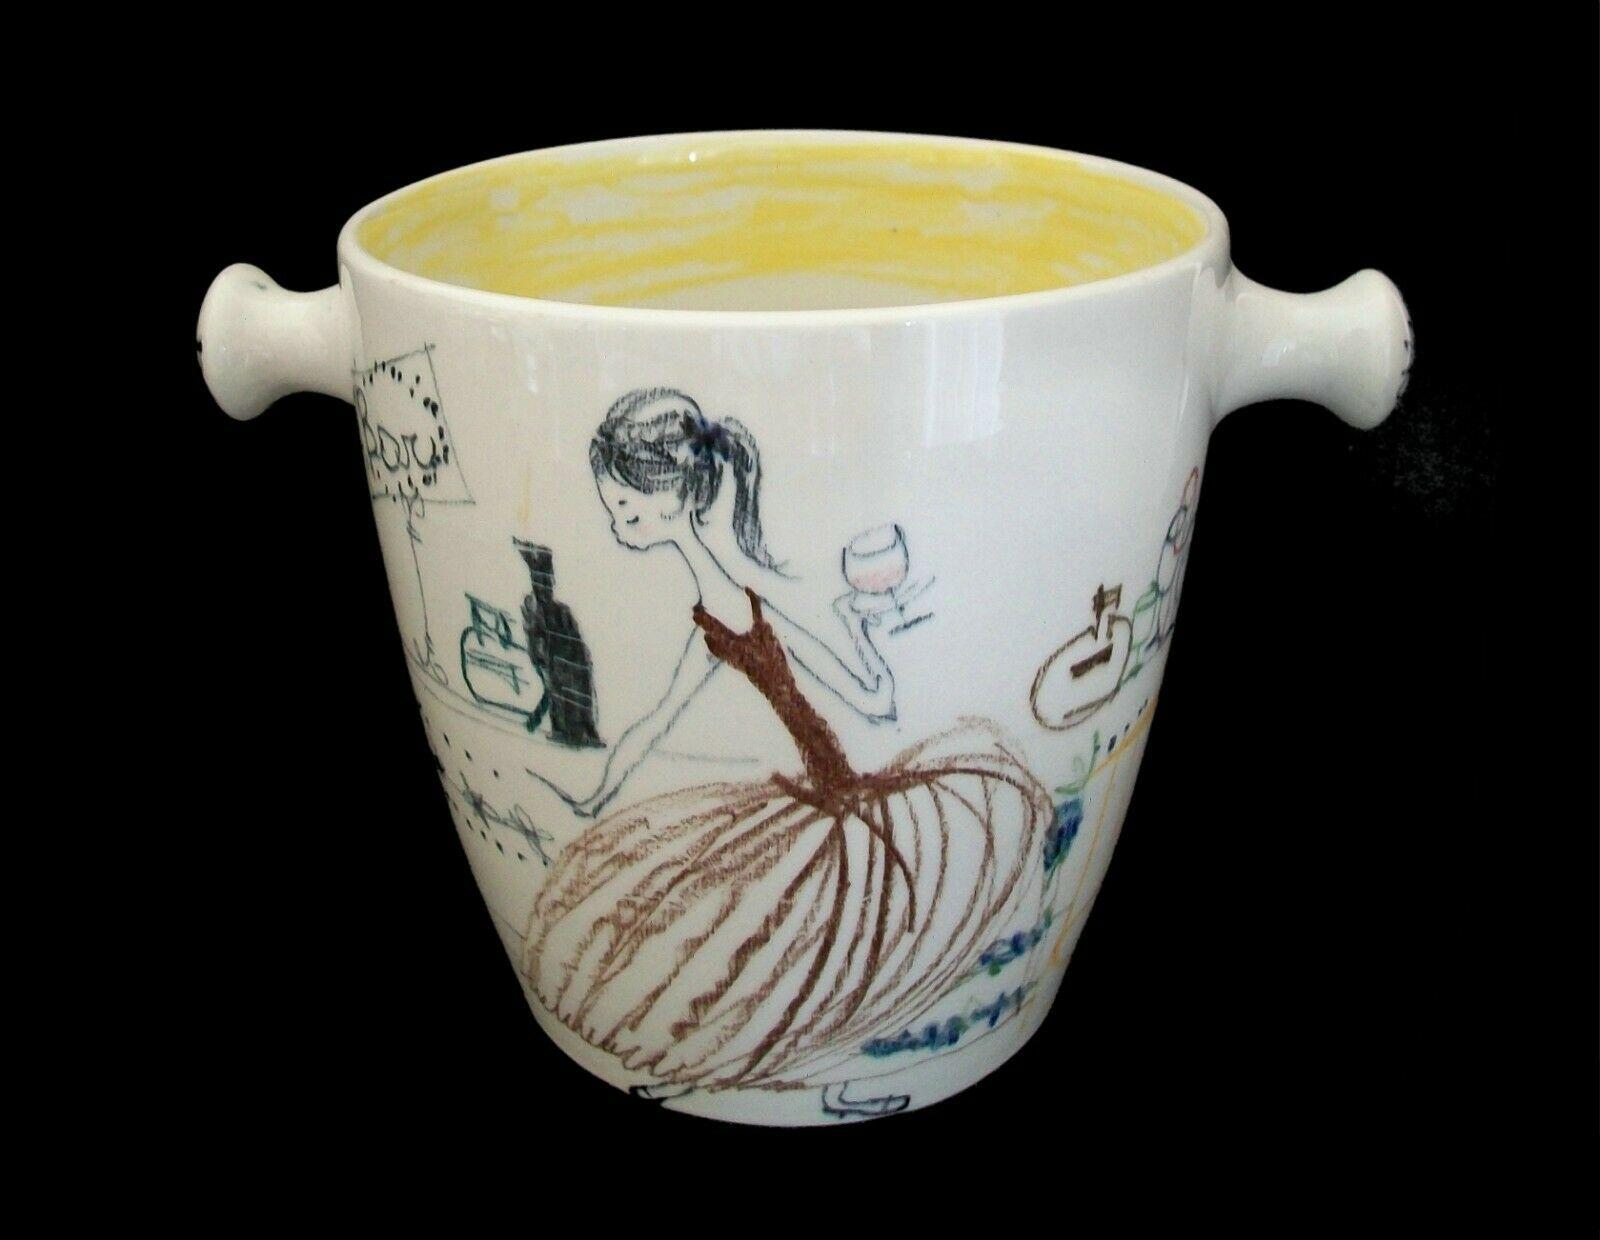 IL QUADRIFOGLIO - Keramik-Eiskübel mit zwei Henkeln aus der Mitte des Jahrhunderts - gedreht mit aufgesetzten Henkeln - mit einer handgezeichneten/dekorierten Figur einer jungen Frau an einer Bar mit einem Getränk in der Hand auf der Vorderseite und